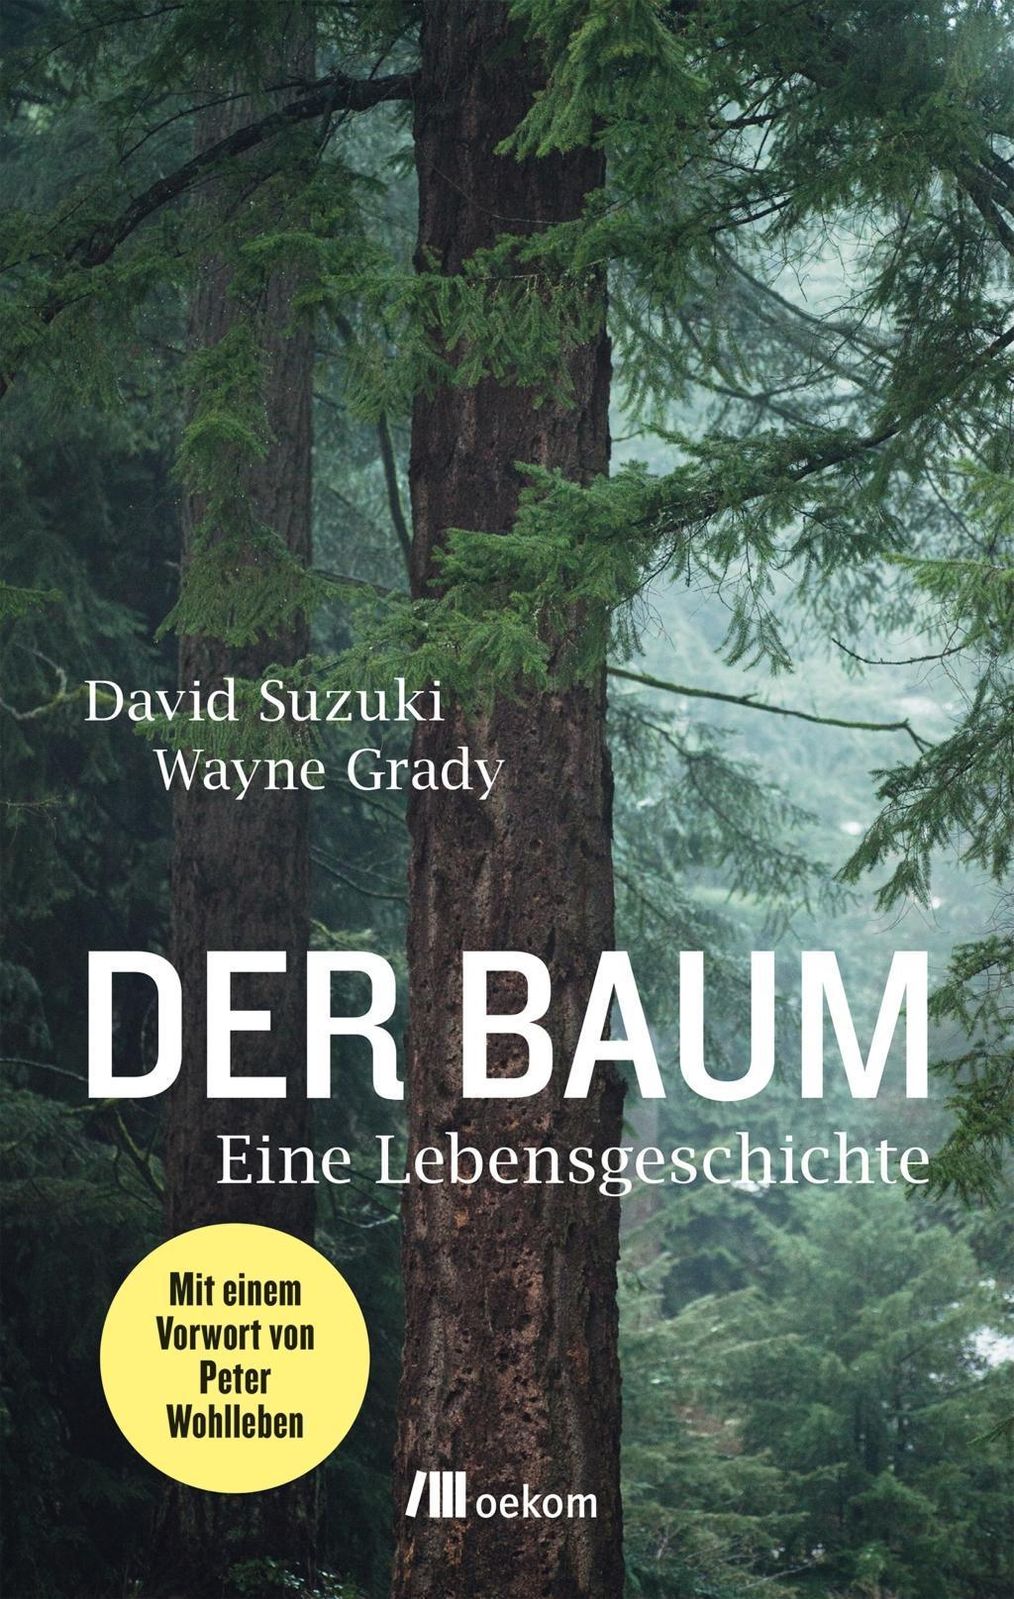 Der Baum Buch von David Suzuki versandkostenfrei bestellen - Weltbild.at